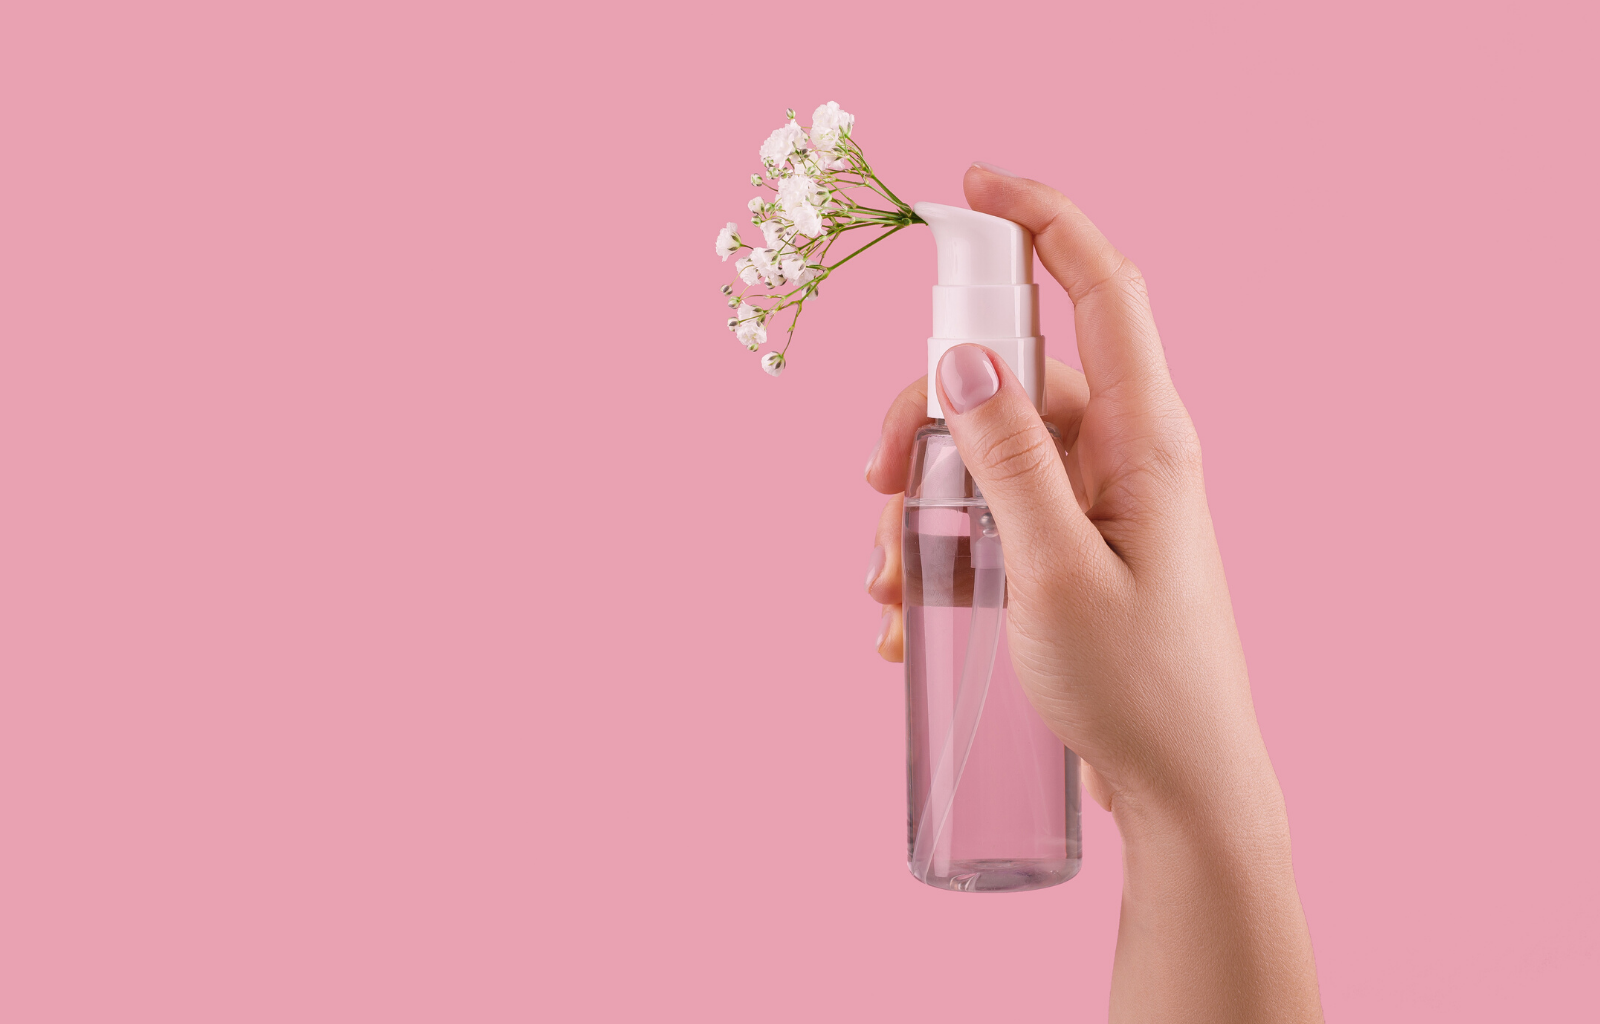 Parfémy a alergické reakce. Jak vybrat správný přírodní parfém?